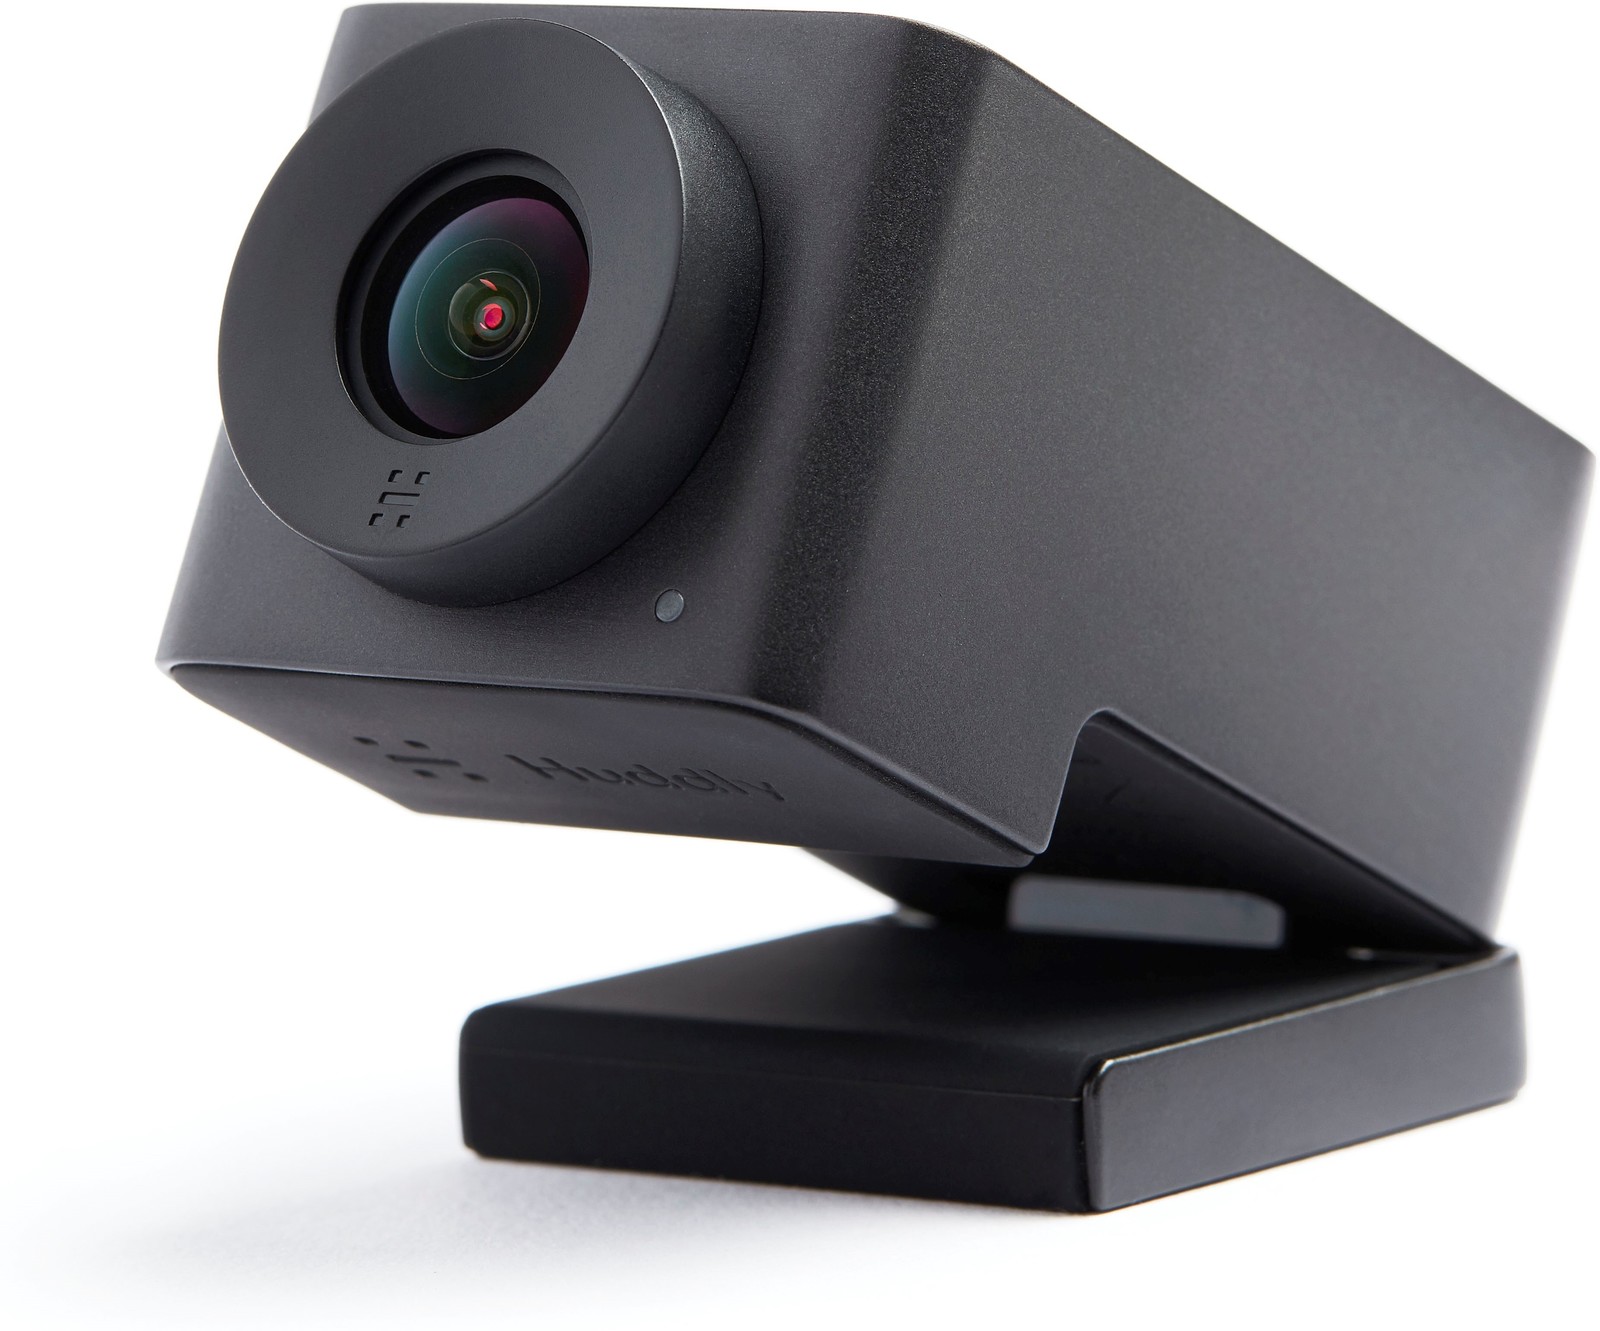 Huddly IQ Kamera Travel-Kit - Konferenzkamera mit Mikrofon - mit künstlicher Intelligenz für smartere Meetings - inkl. 0,6 Meter USB-Kabel - kleine und mittelgroße Räume